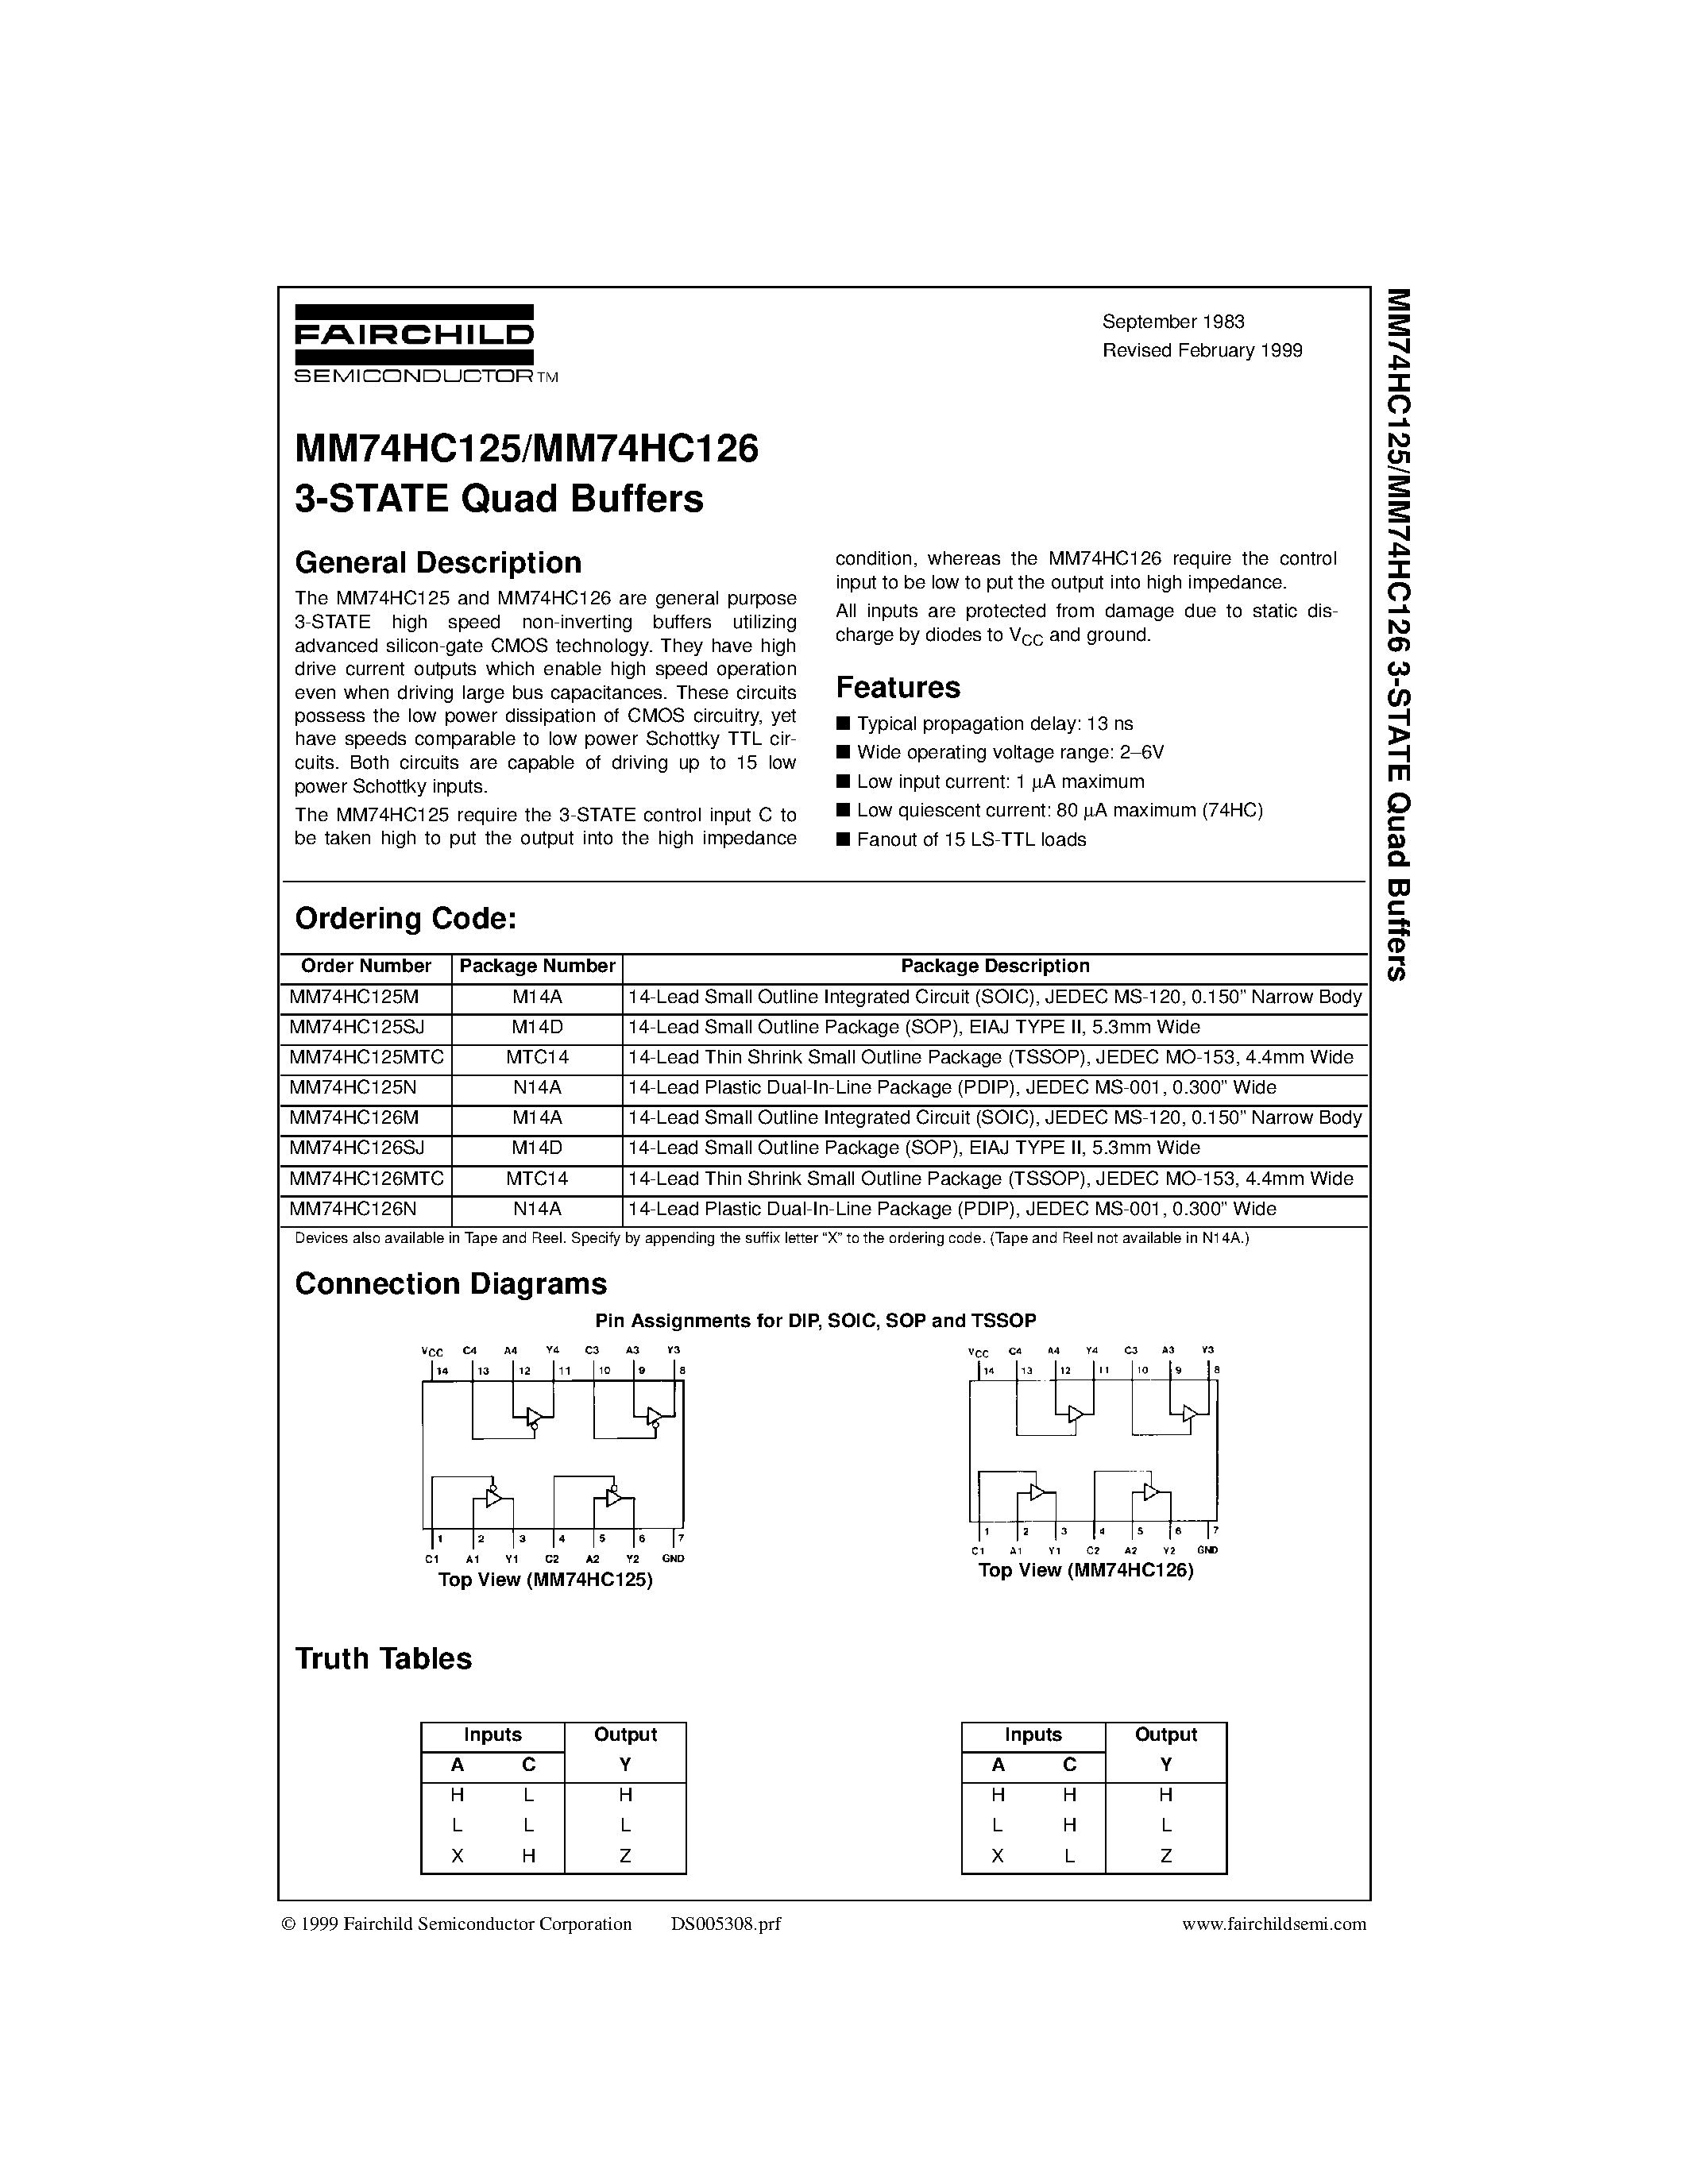 Datasheet M74HC125 - 3-STATE Quad Buffers page 1